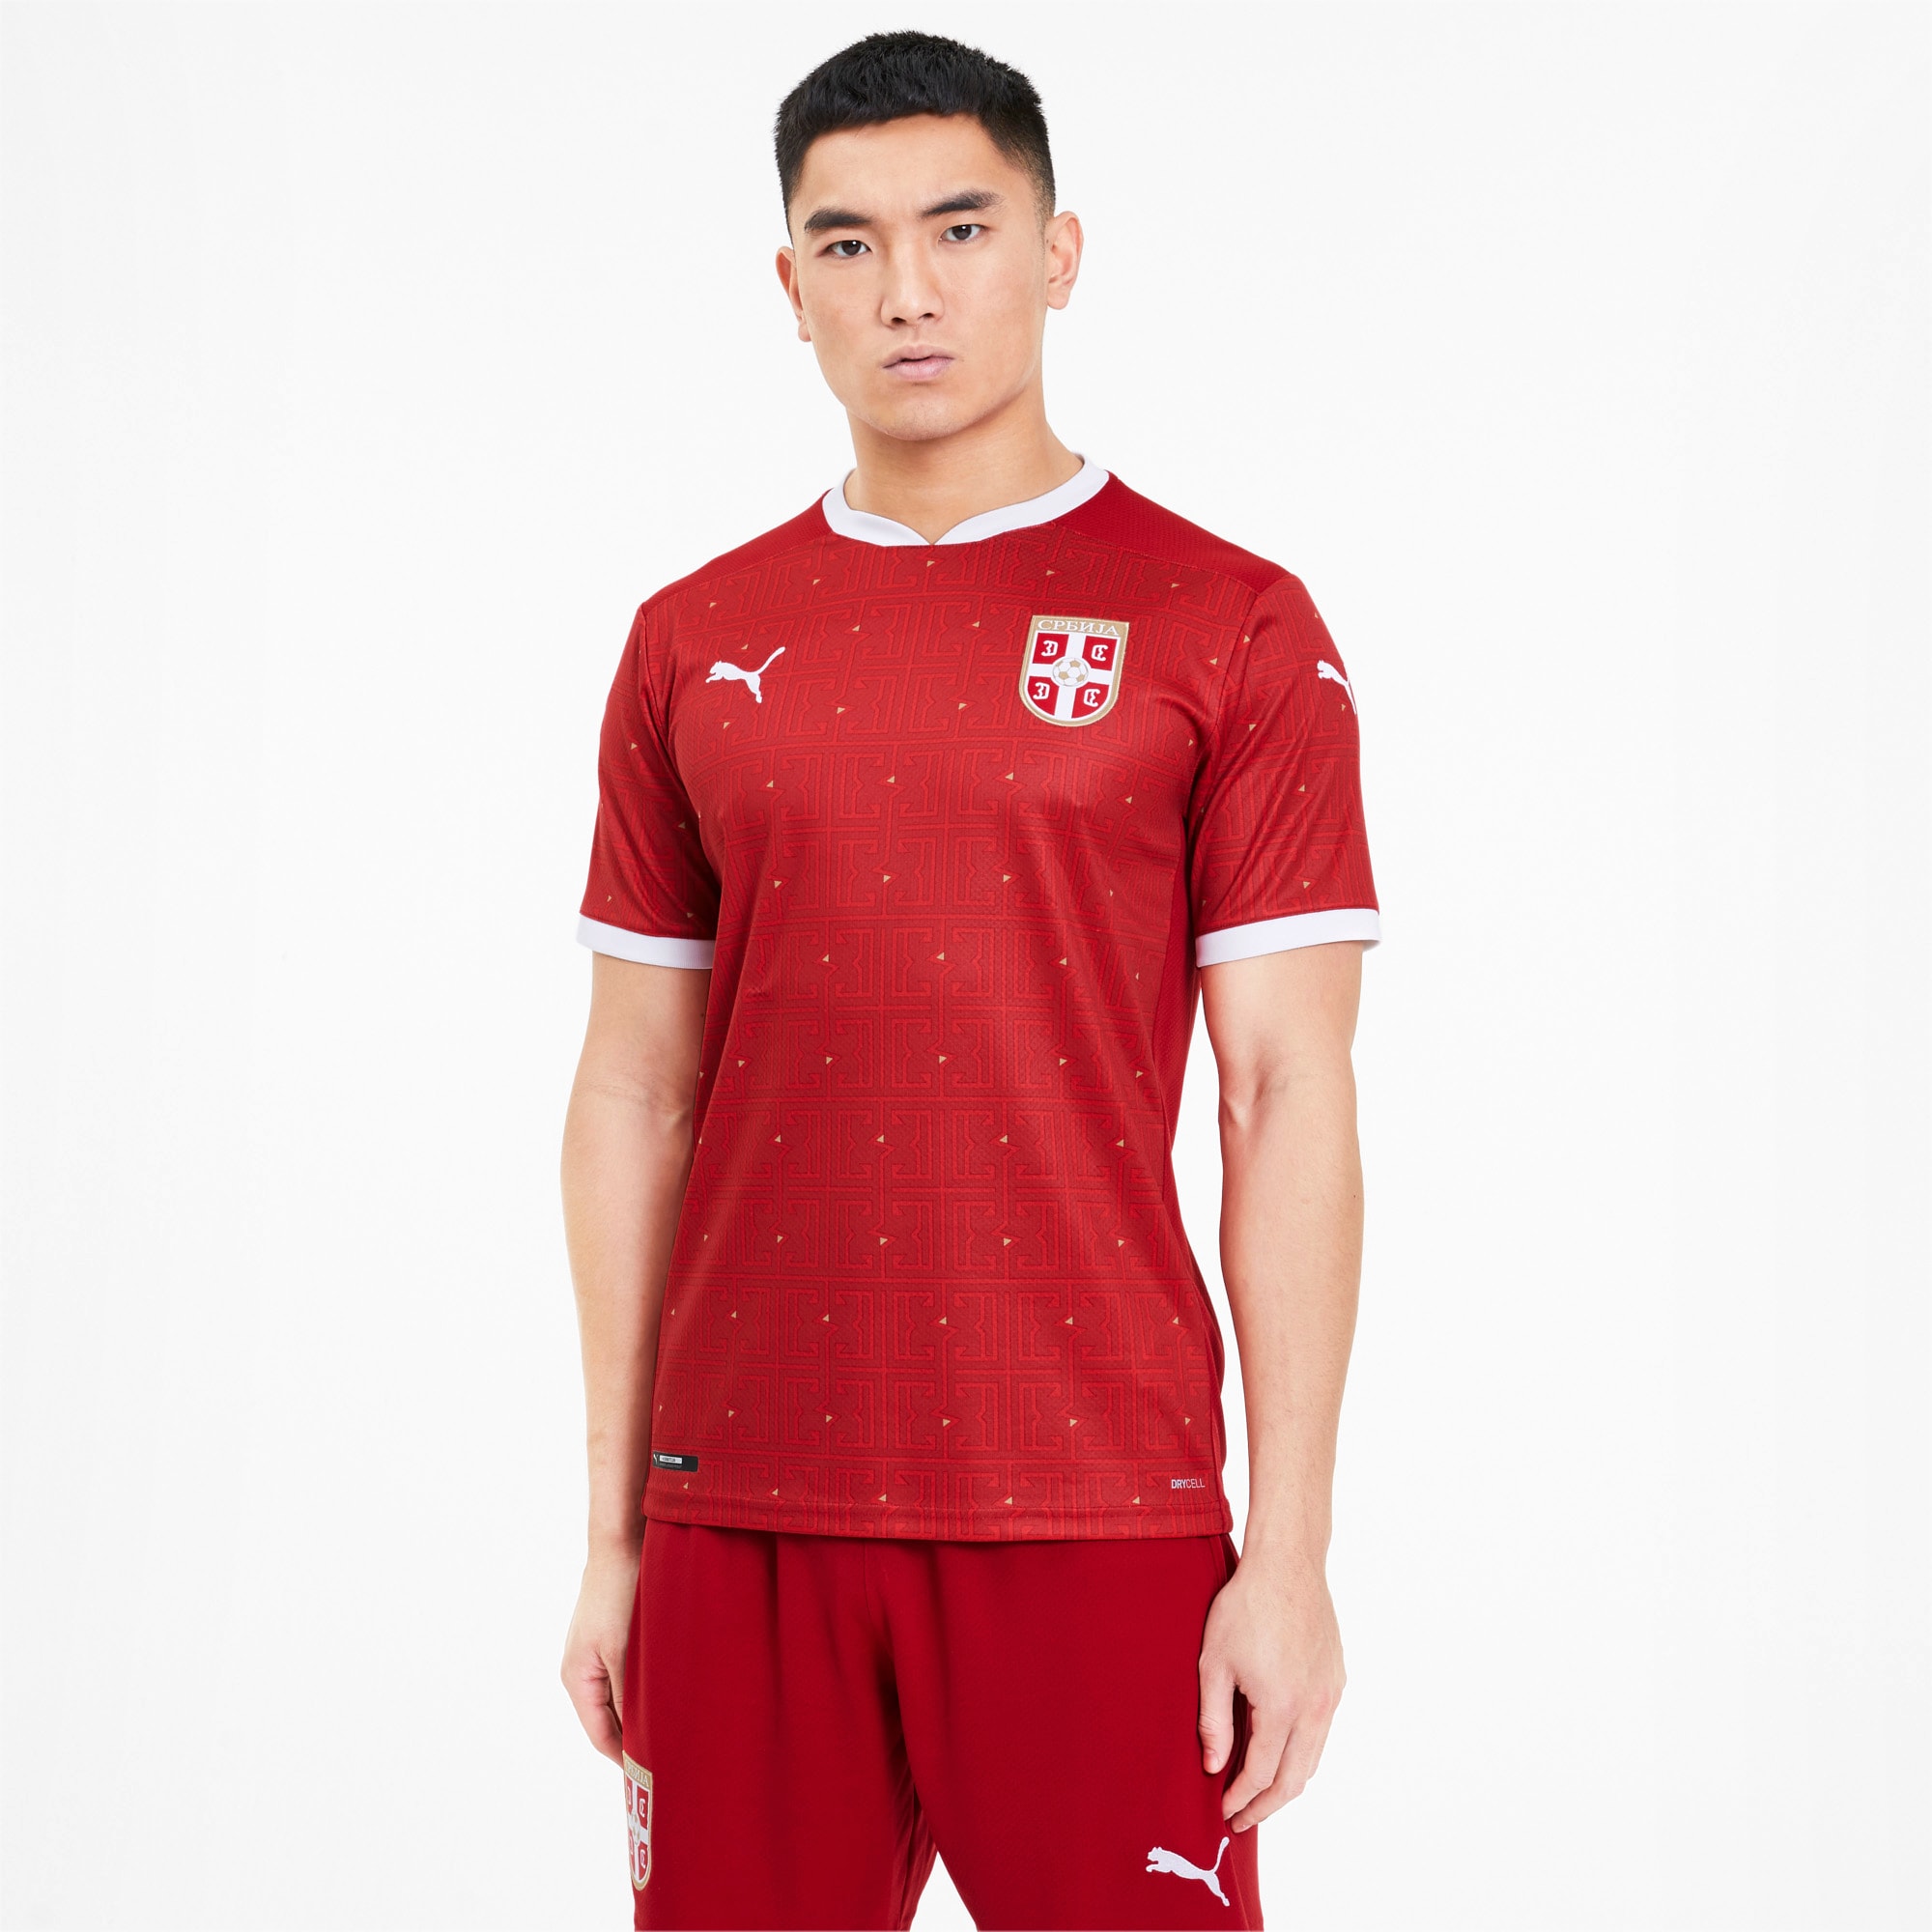 Puma公式 セルビア Fss ホーム レプリカ シャツ 半袖 ユニフォーム サッカー メンズ Chili Pepper Puma Red プーマ Tシャツ トップス プーマ